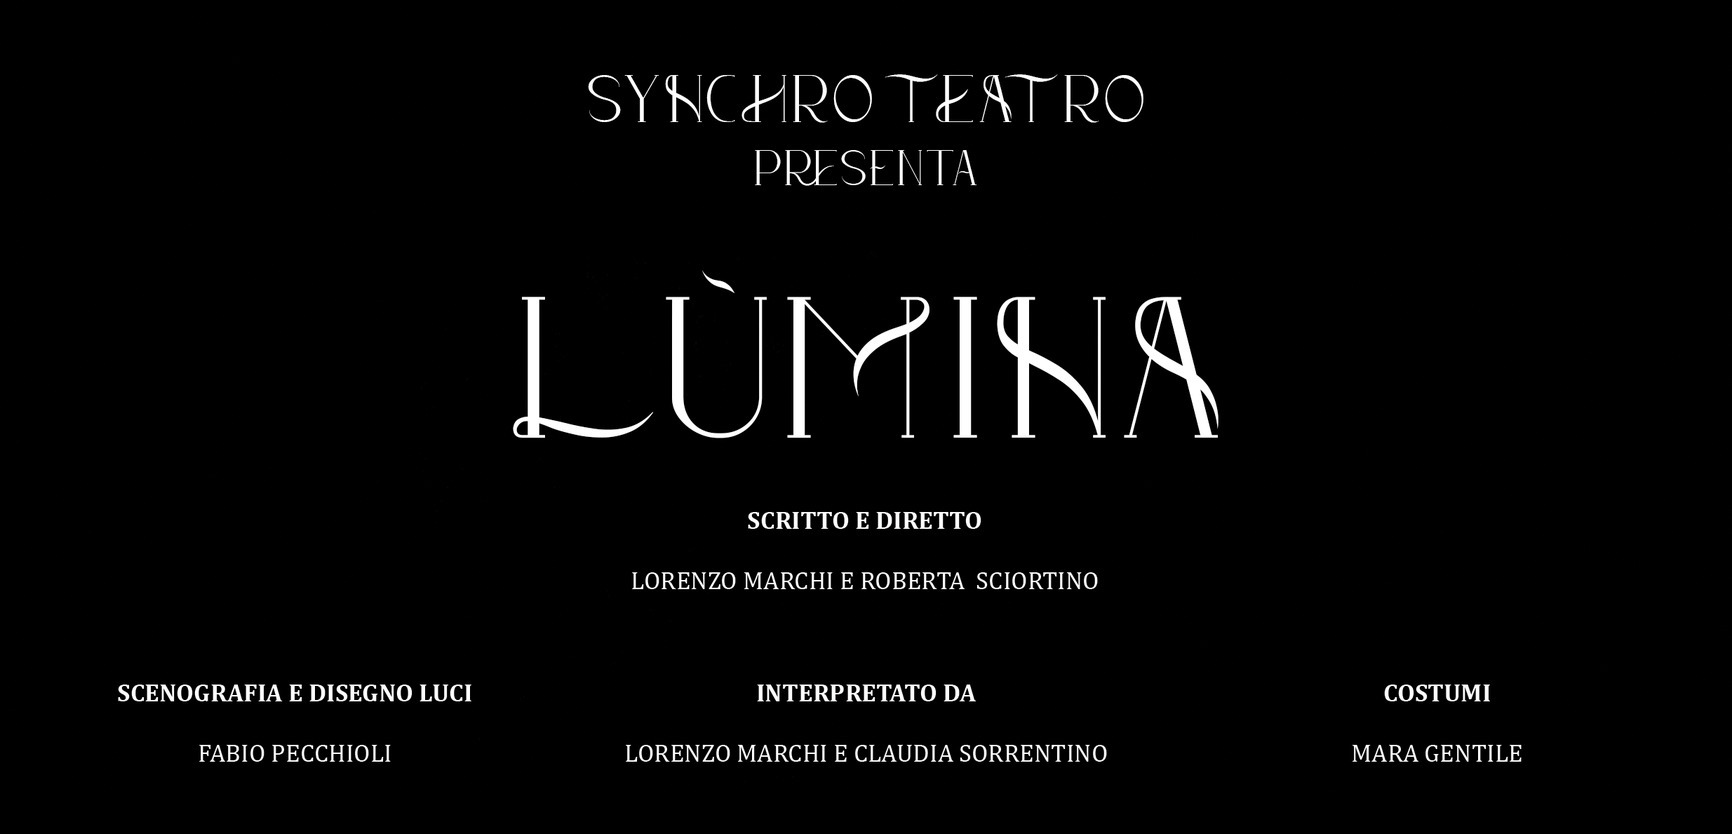 La Compagnia Synchro Teatro porta in scena "Lumina" allo Spazio Franco di Palermo